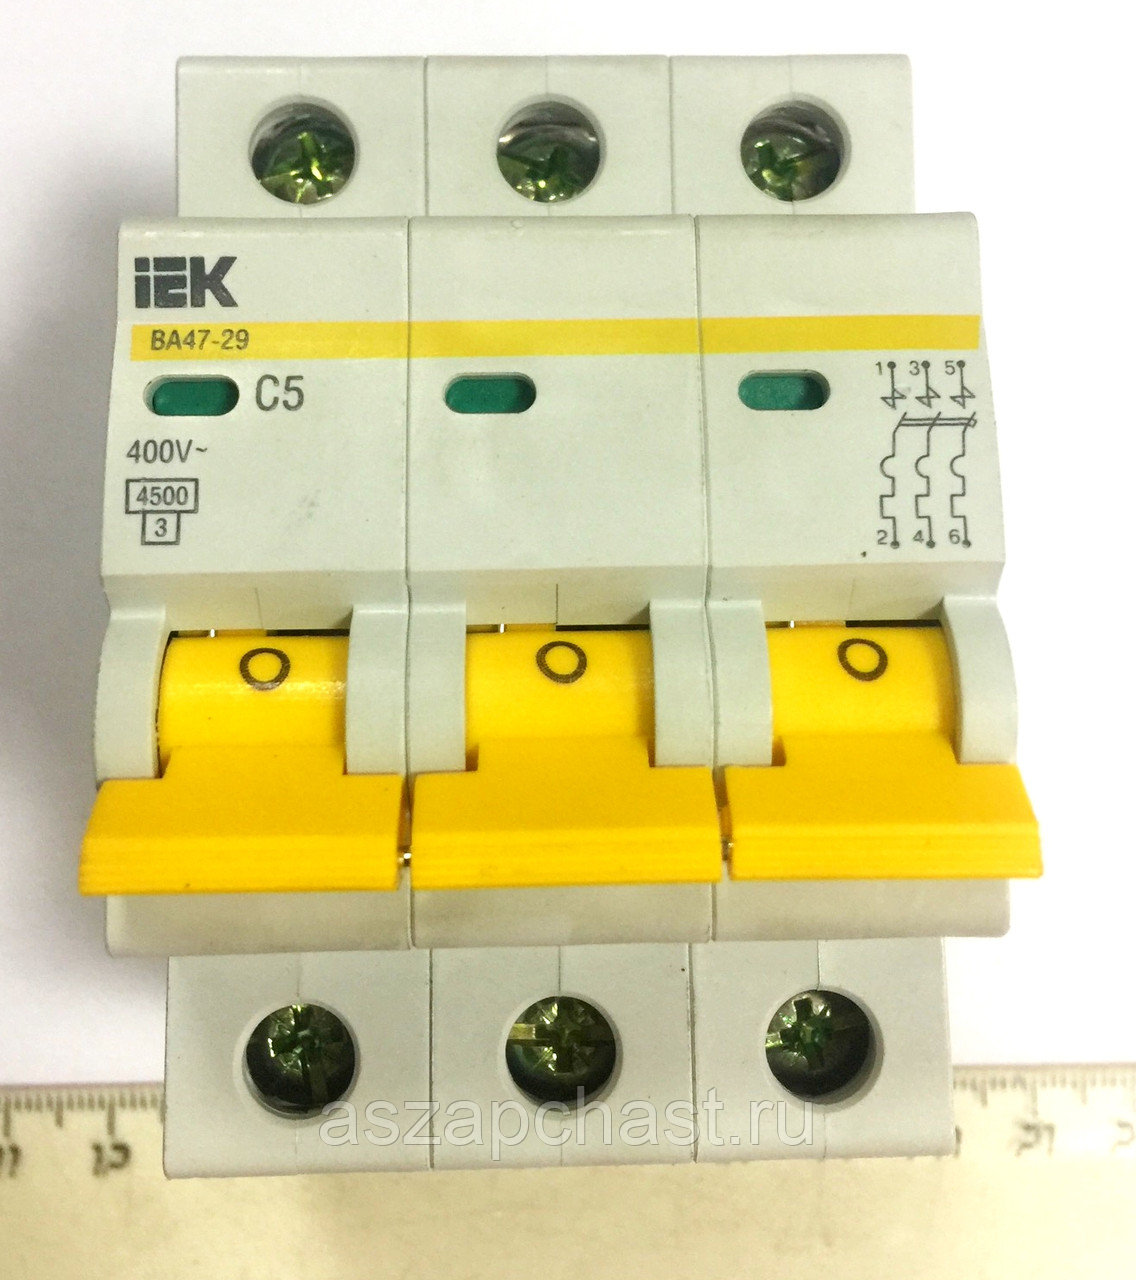 Ва 47 29 3. Автоматический выключатель IEK ва47-29 3p. Выключатель автоматический ва47-29 3р. Выключатель автоматический ва47-29 3р 16а IEK Атрион. Выключатель IEK ва47-29 3р 50а b.